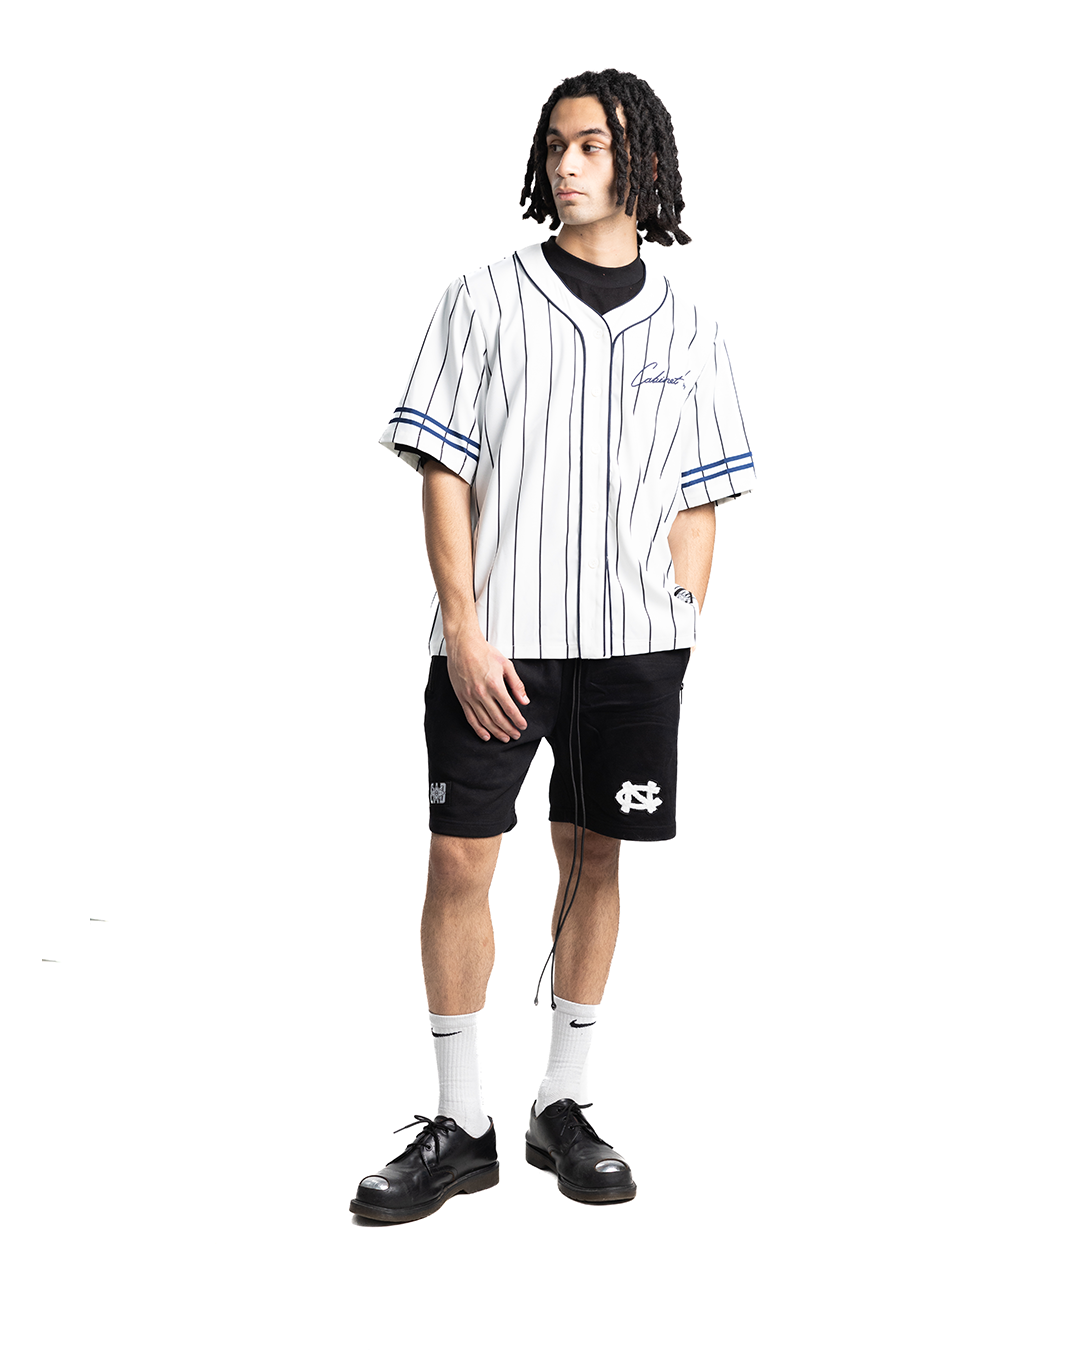 Cabinet Noir Baseball Jersey White